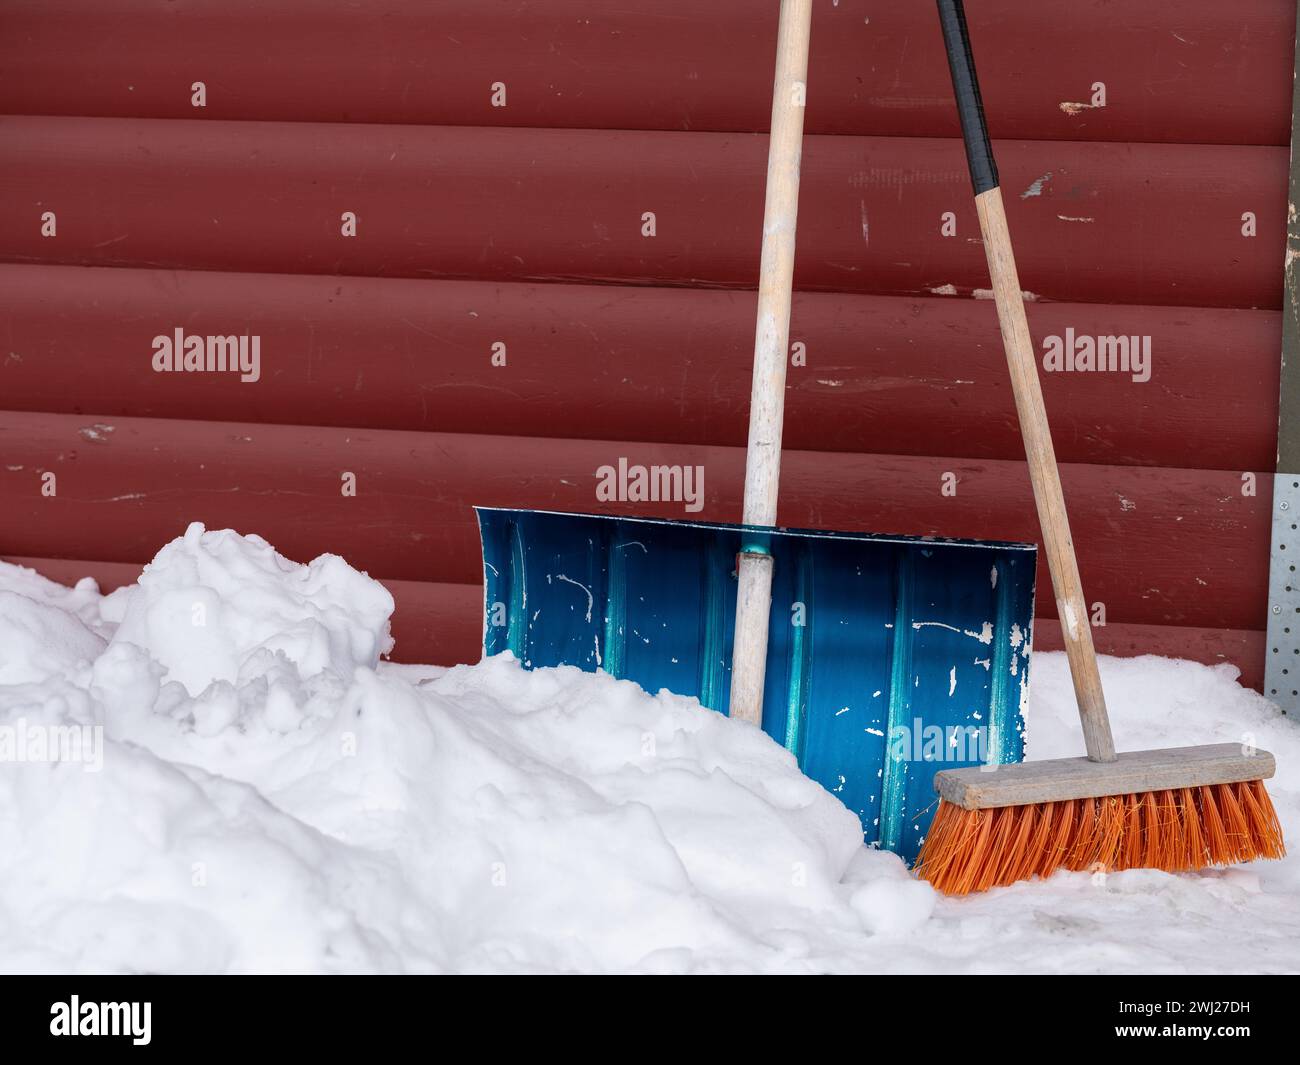 Mélangez et balayez empilés contre un mur rouge avec de la neige sur le sol. Inspiration de travail hivernal Banque D'Images